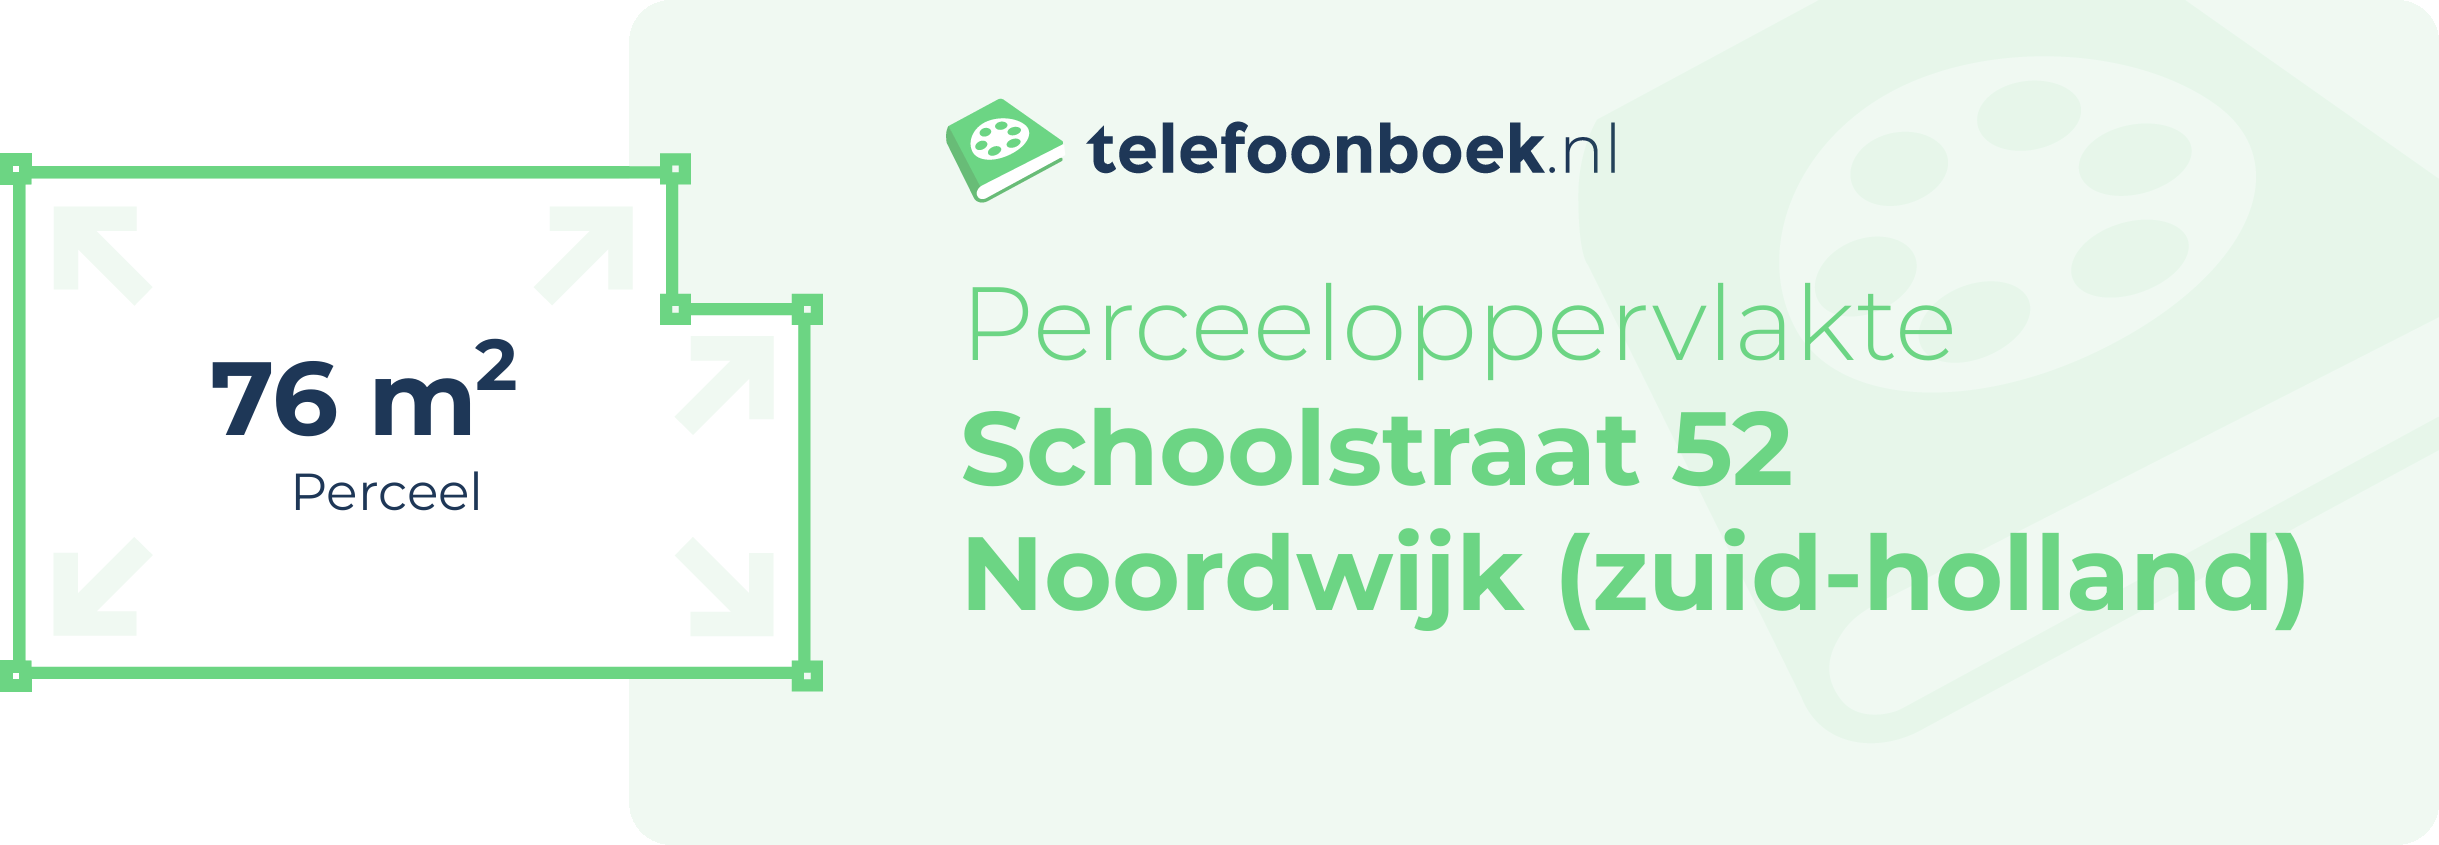 Perceeloppervlakte Schoolstraat 52 Noordwijk (Zuid-Holland)